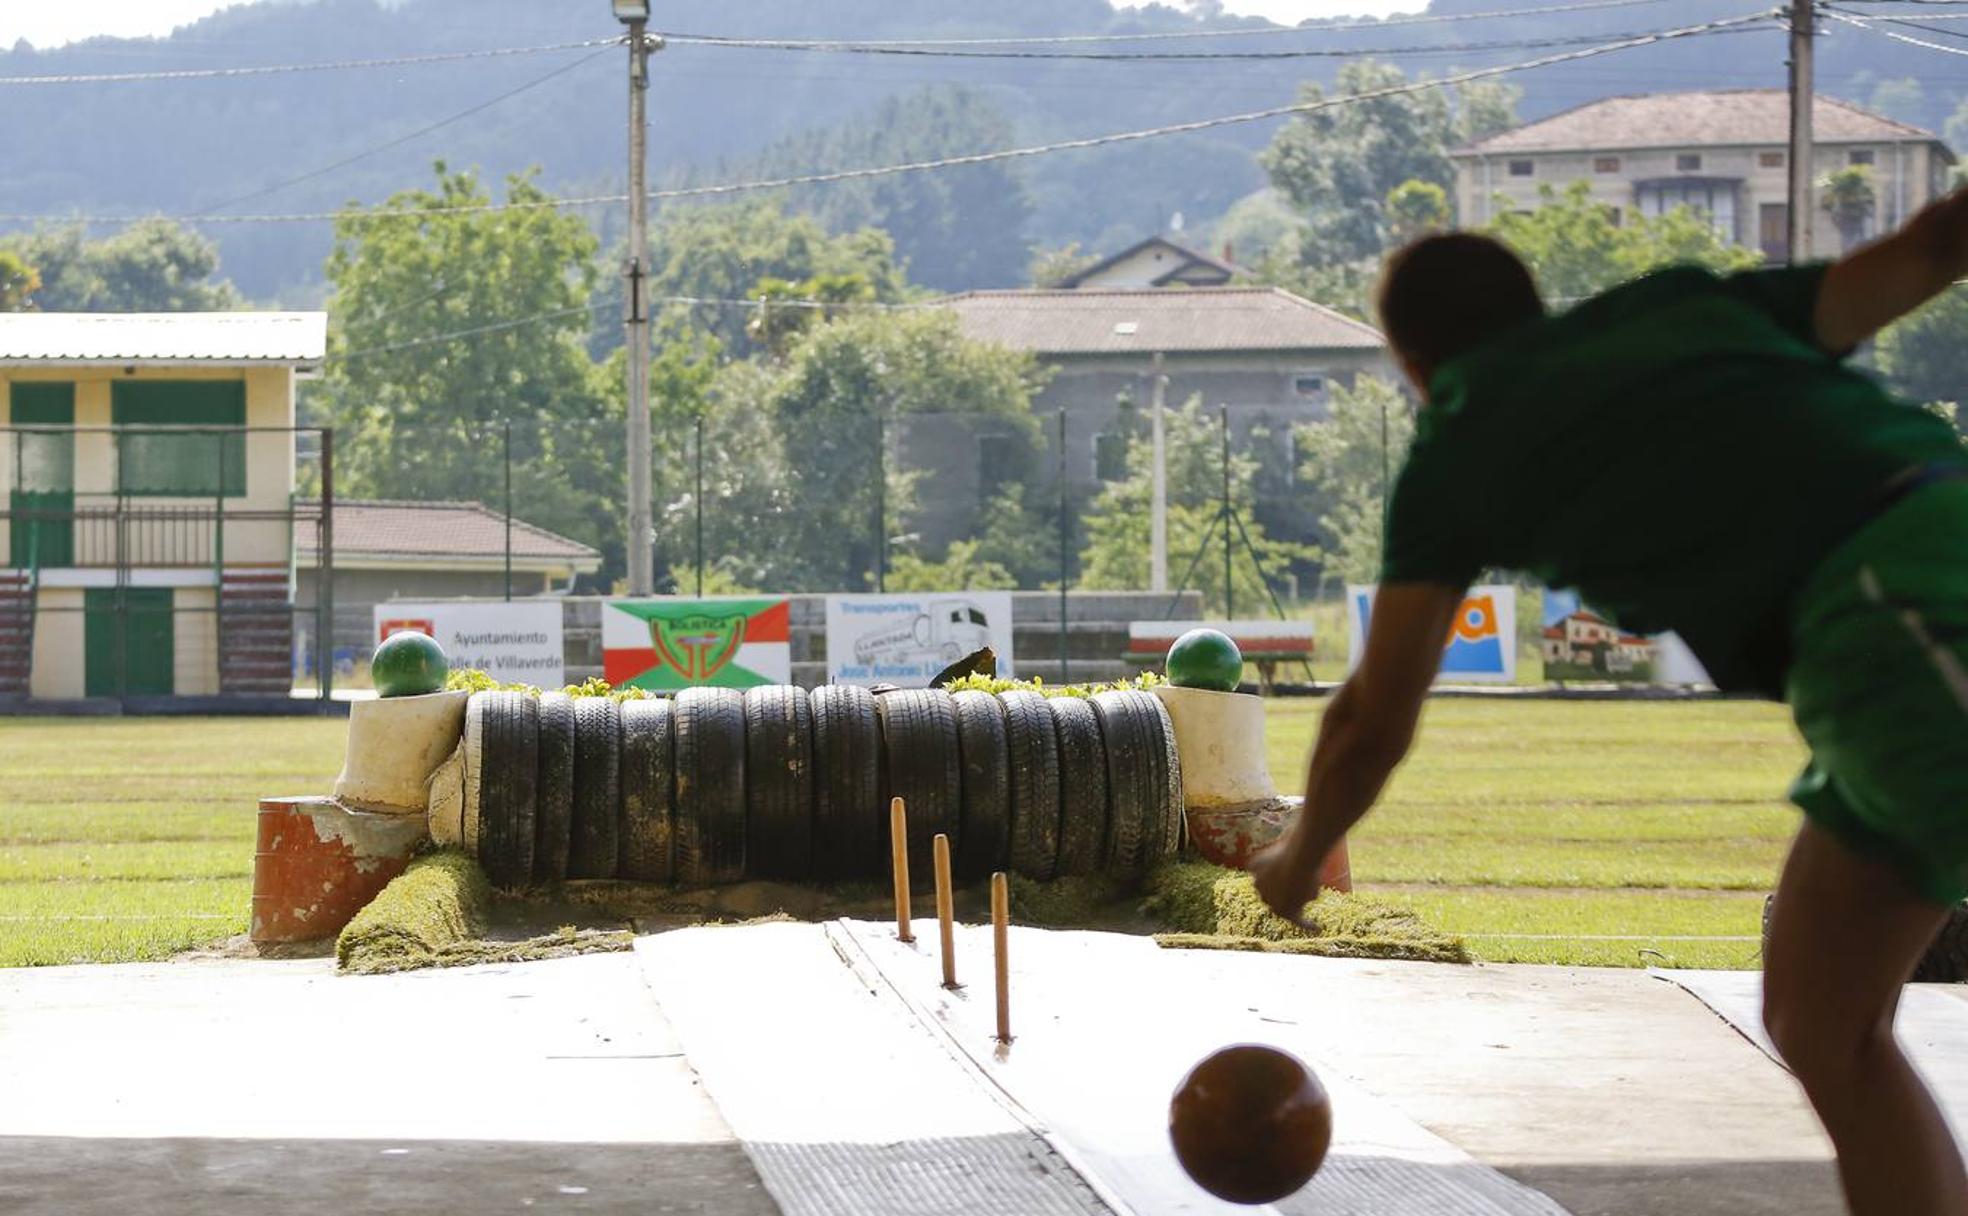 El pasabolo tablón es uno de los mayores entretenimientos de las tardes de verano en Valle de Villaverde.